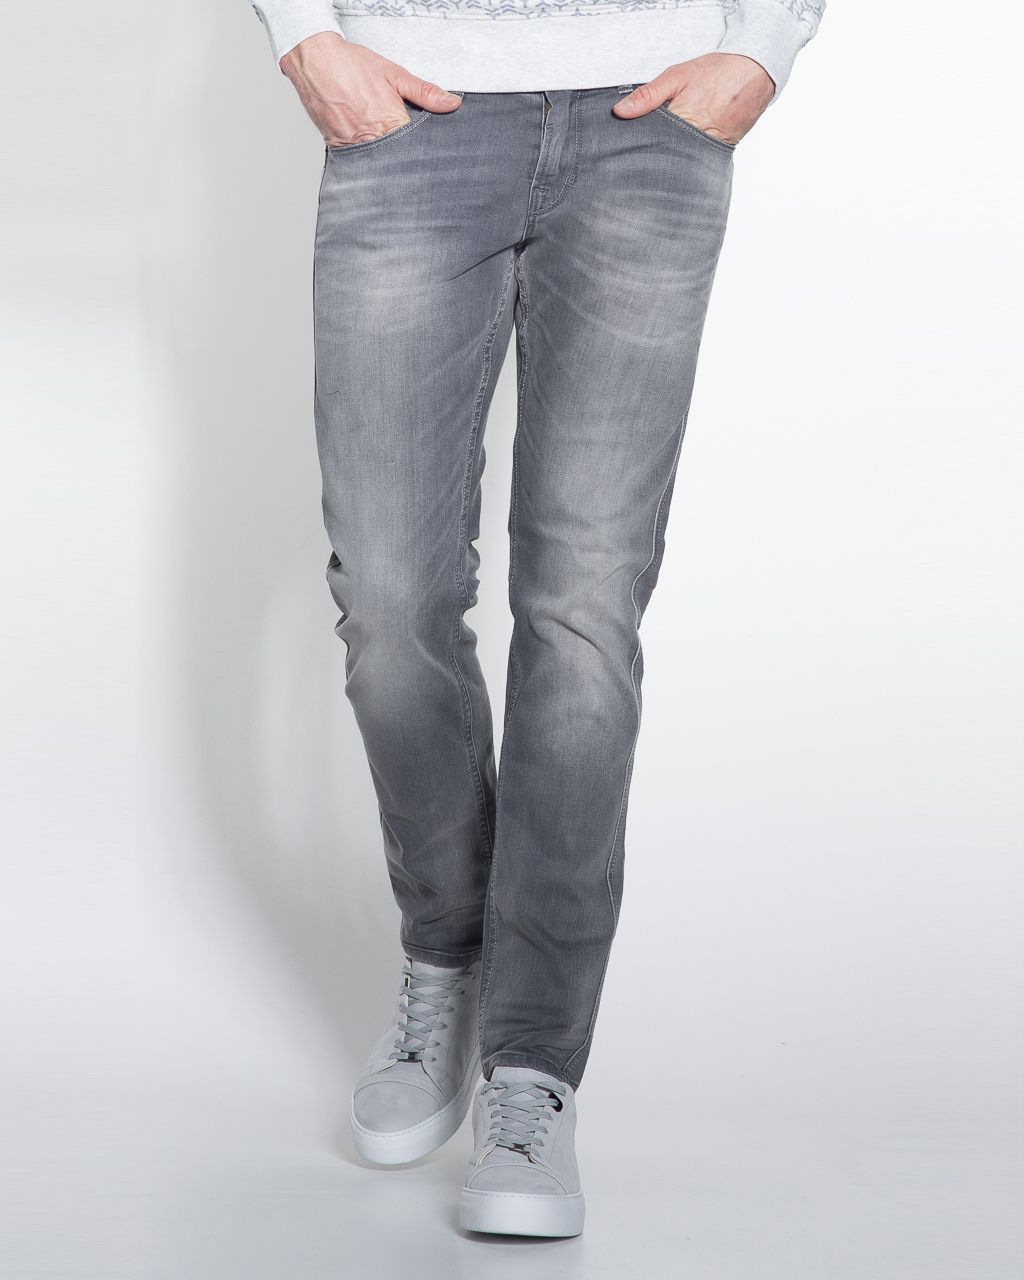 PME Legend Nightflight Jeans | Shop nu - Only for Men